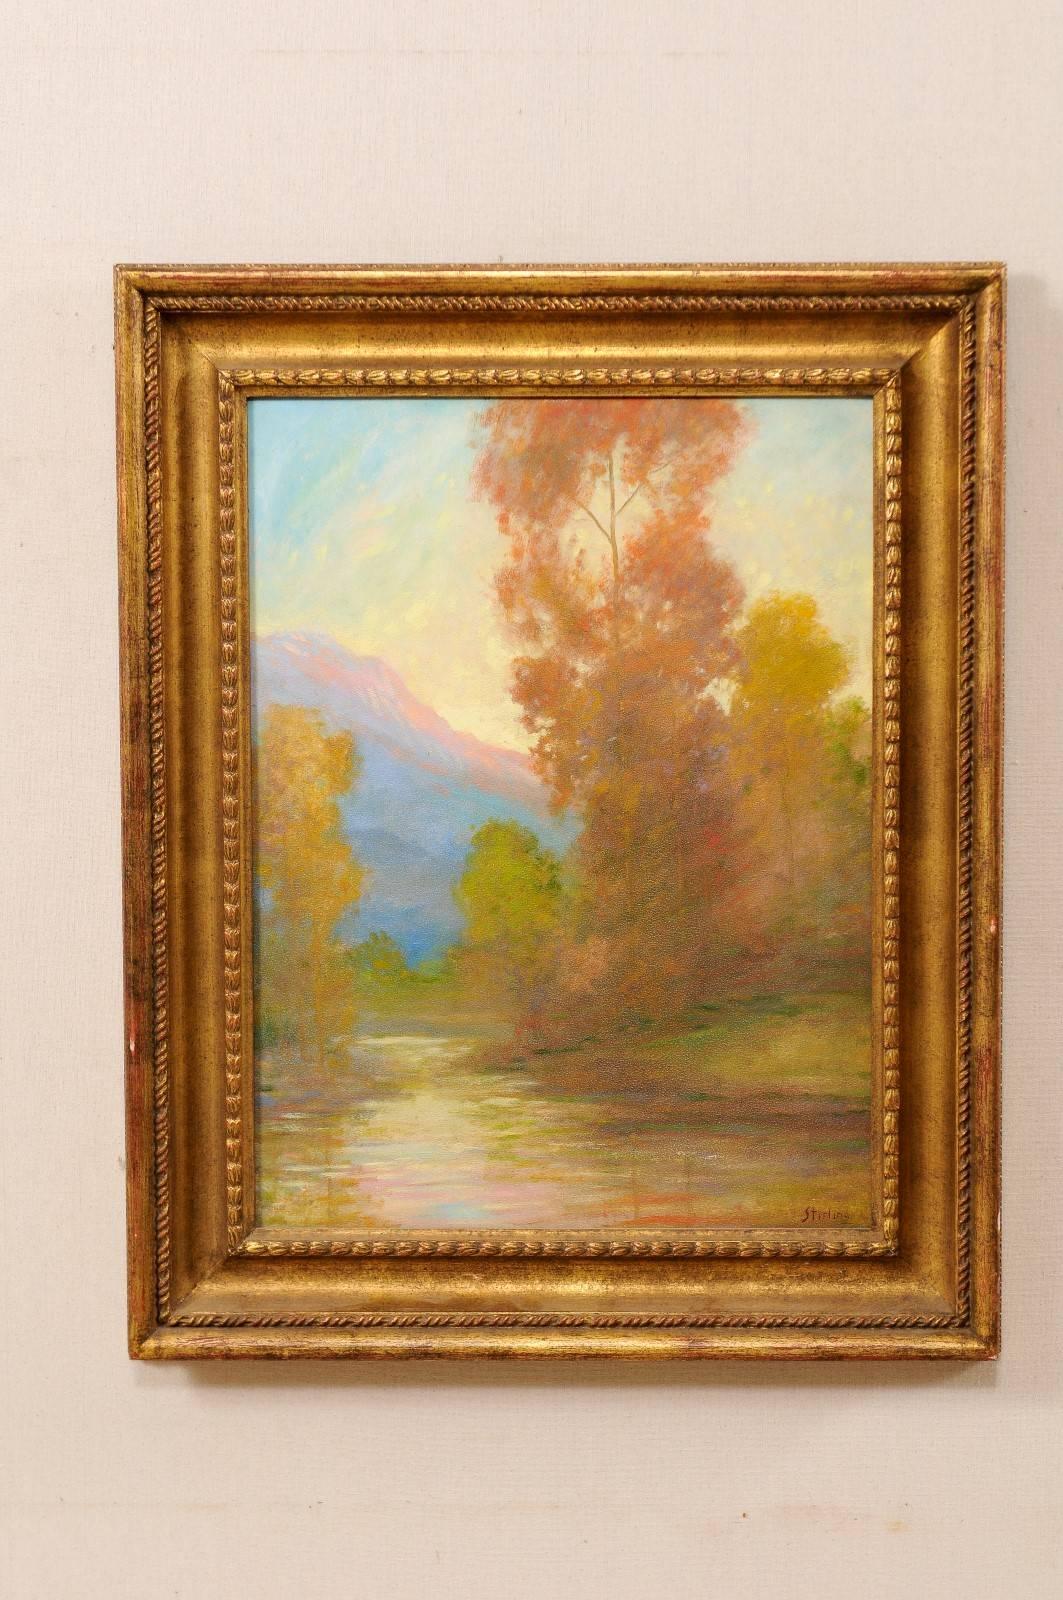 Une peinture à l'huile de paysage de David Sterling, artiste américain (1887-1971) dans un cadre. Il s'agit d'une représentation romantique d'une source d'eau entourée d'arbres d'automne et d'une montagne au loin. Ce tableau est présenté dans un